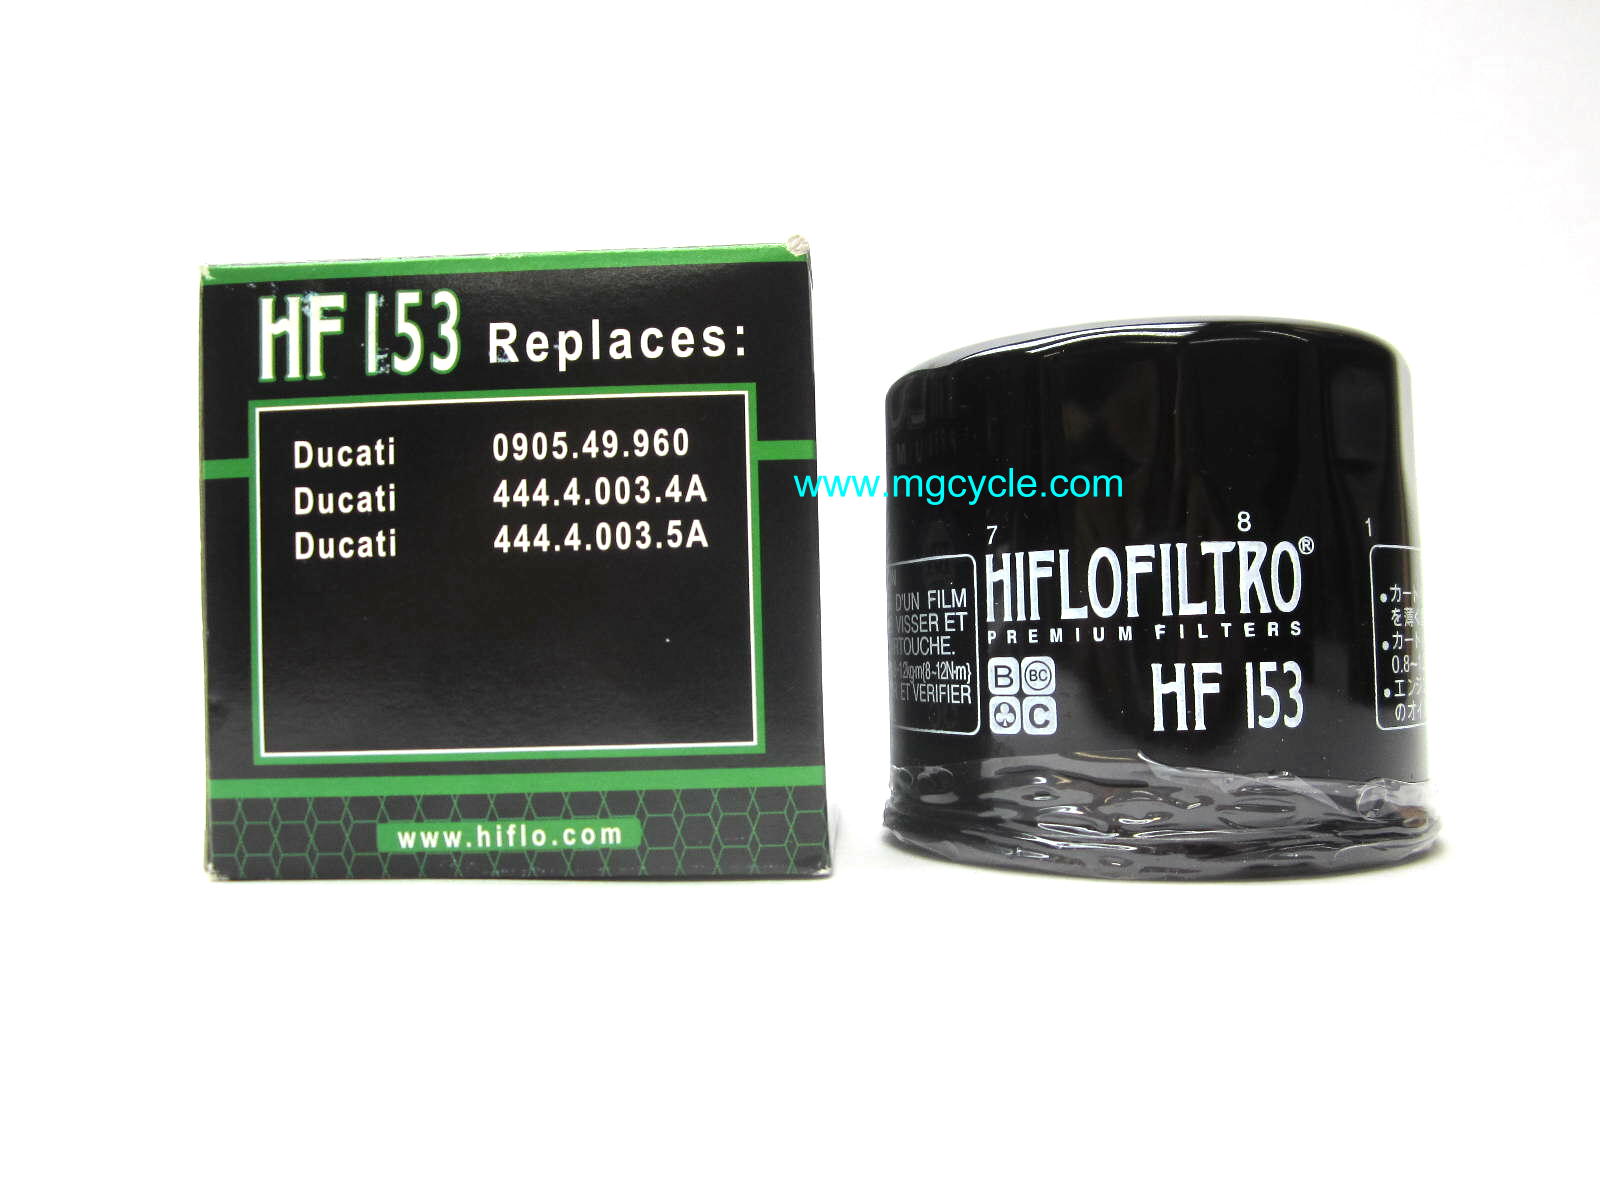 HiFlo oil filter Ducati 44440035A